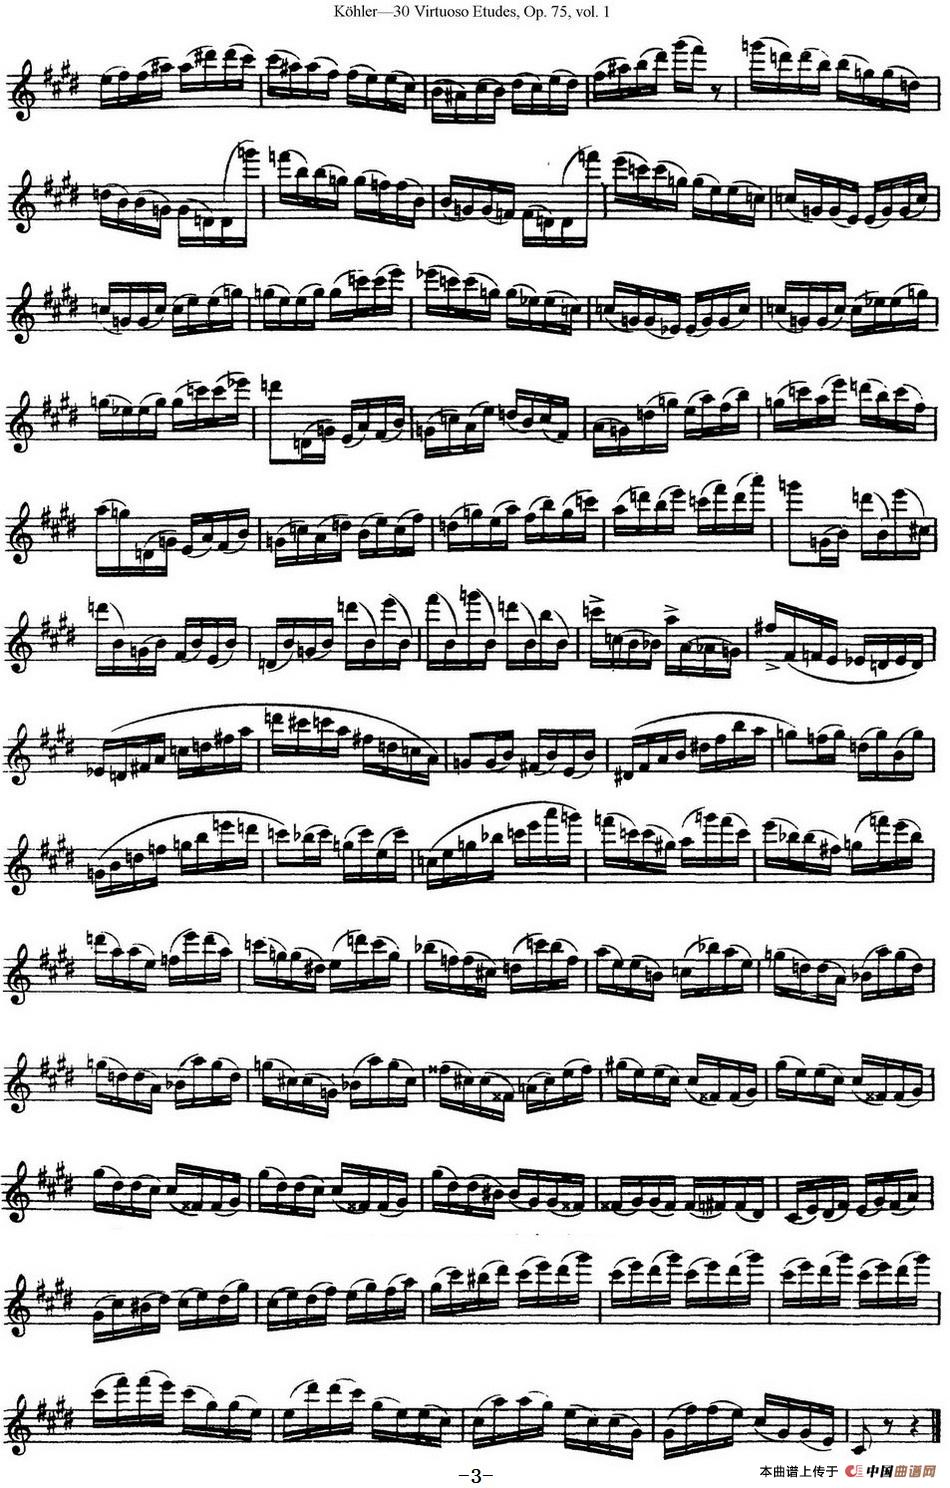 柯勒30首高级长笛练习曲作品75号（NO.8）长笛谱